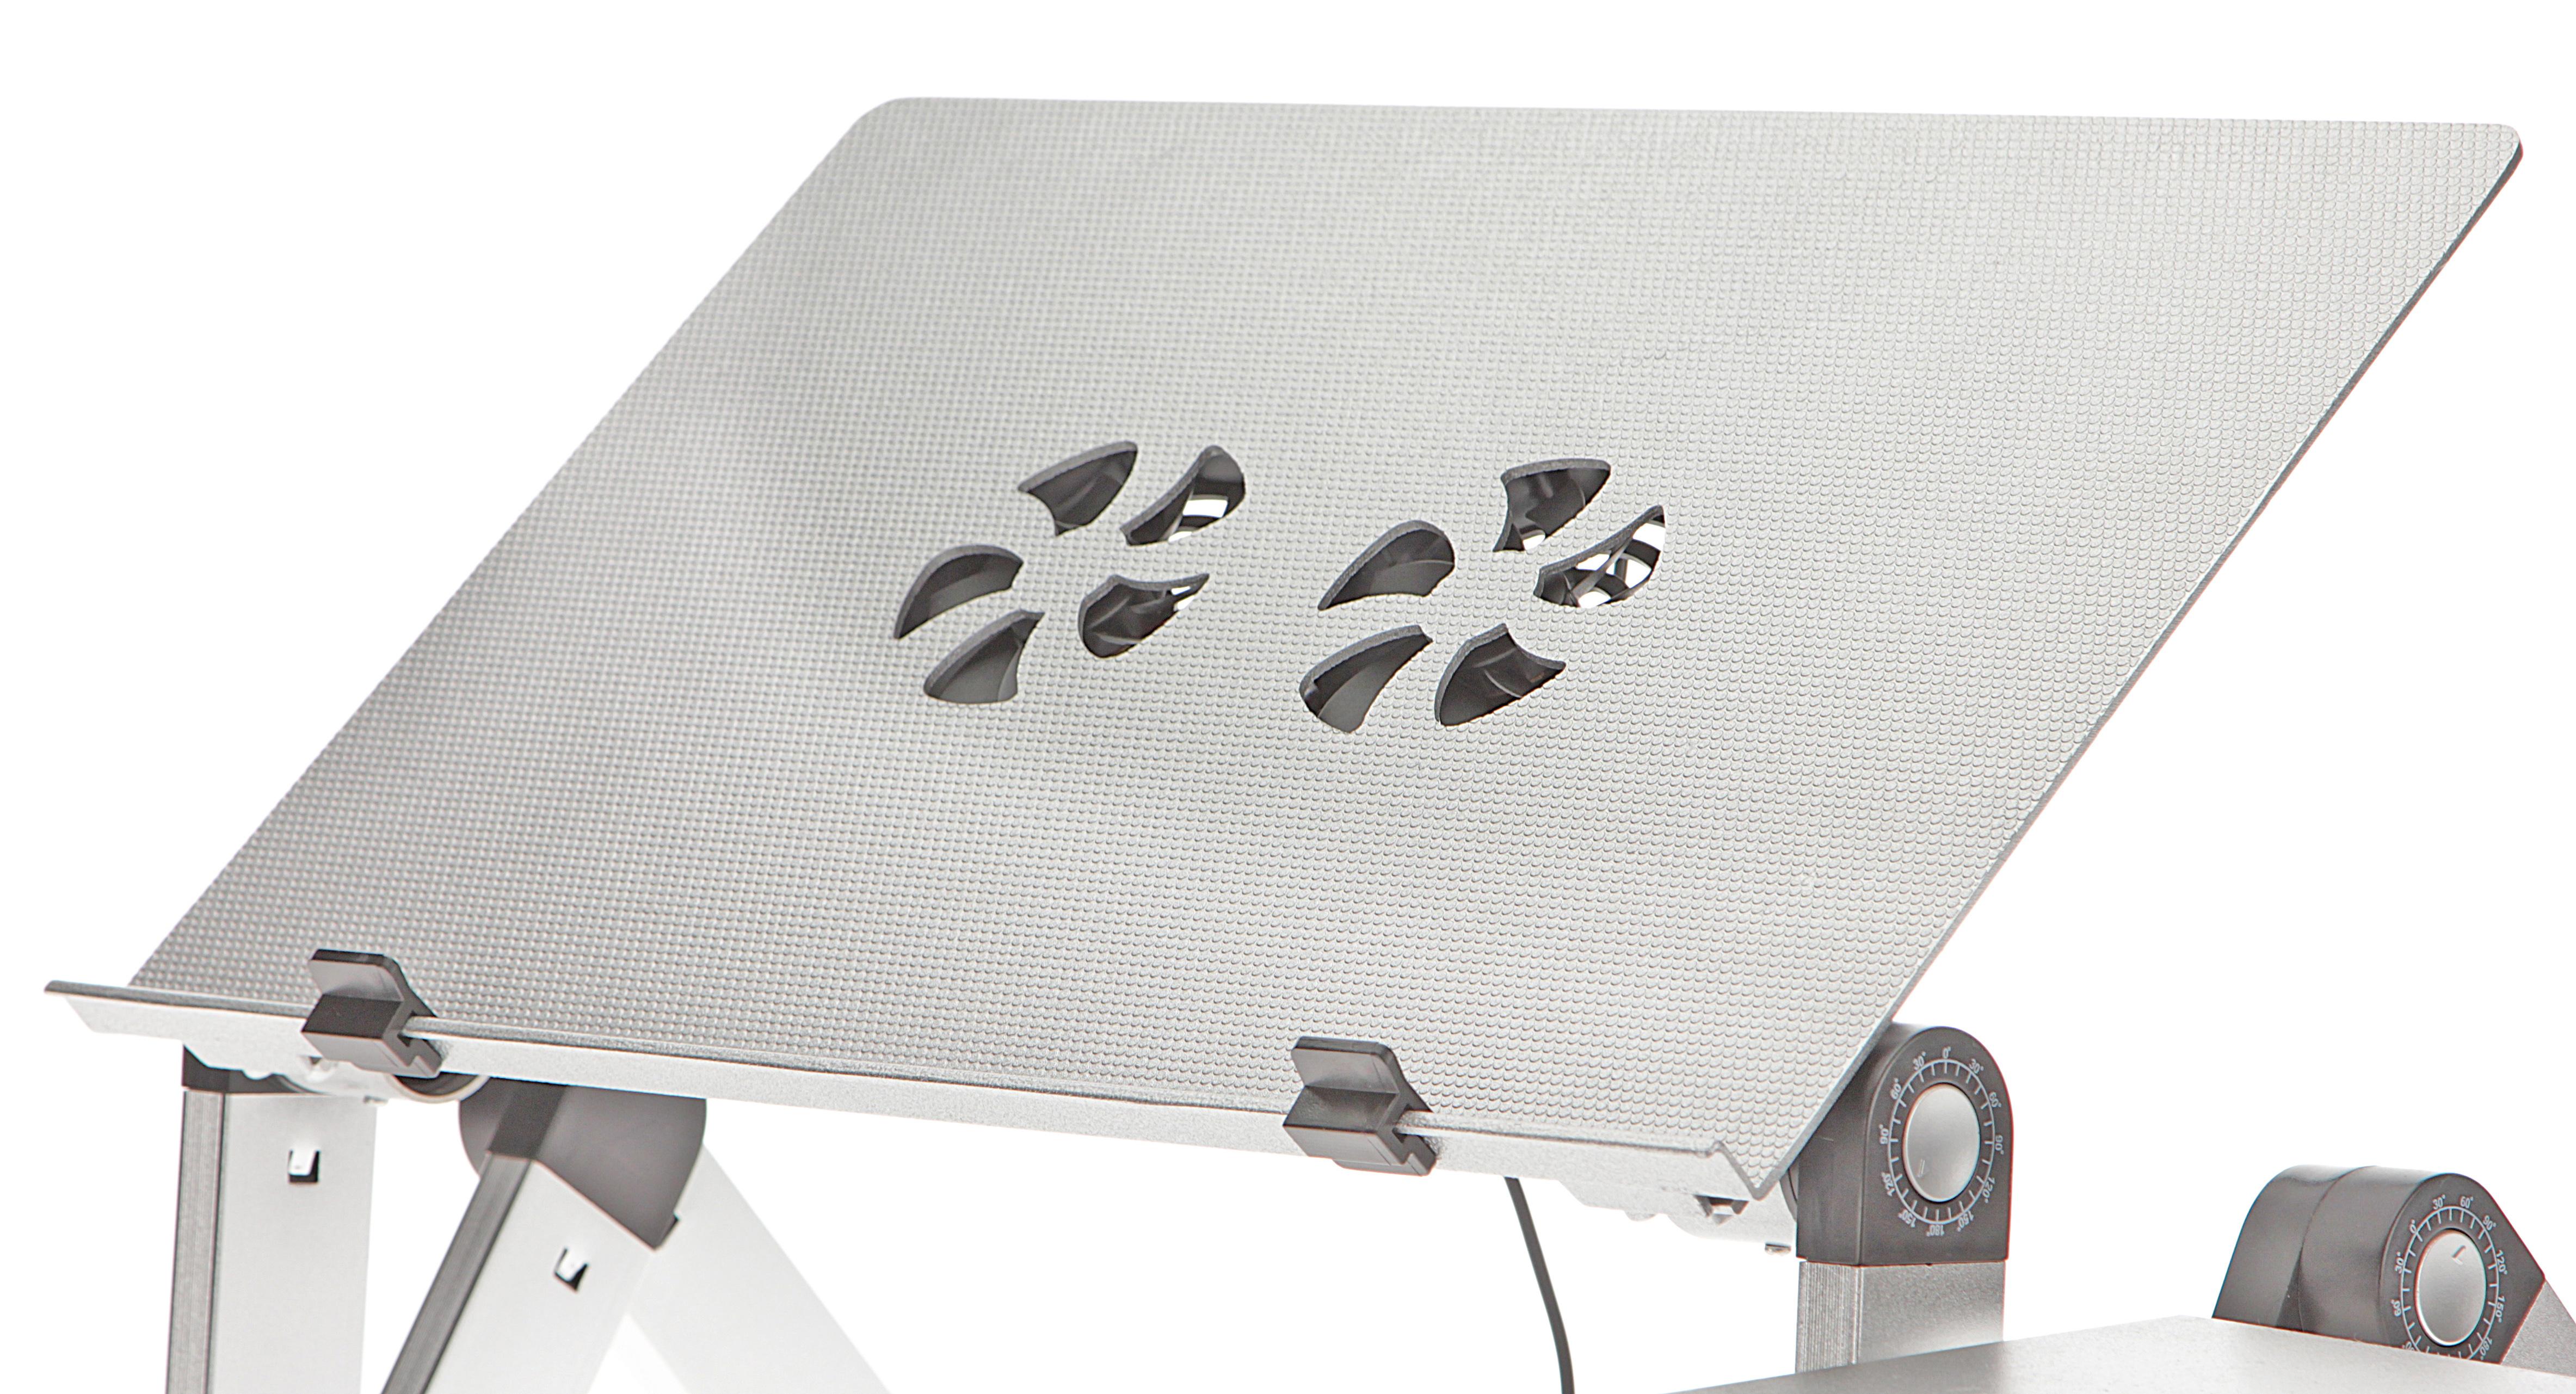 Фото 1 Столик для ноутбука CG T6 Silver с активным охлаждением и подставкой для мышки 